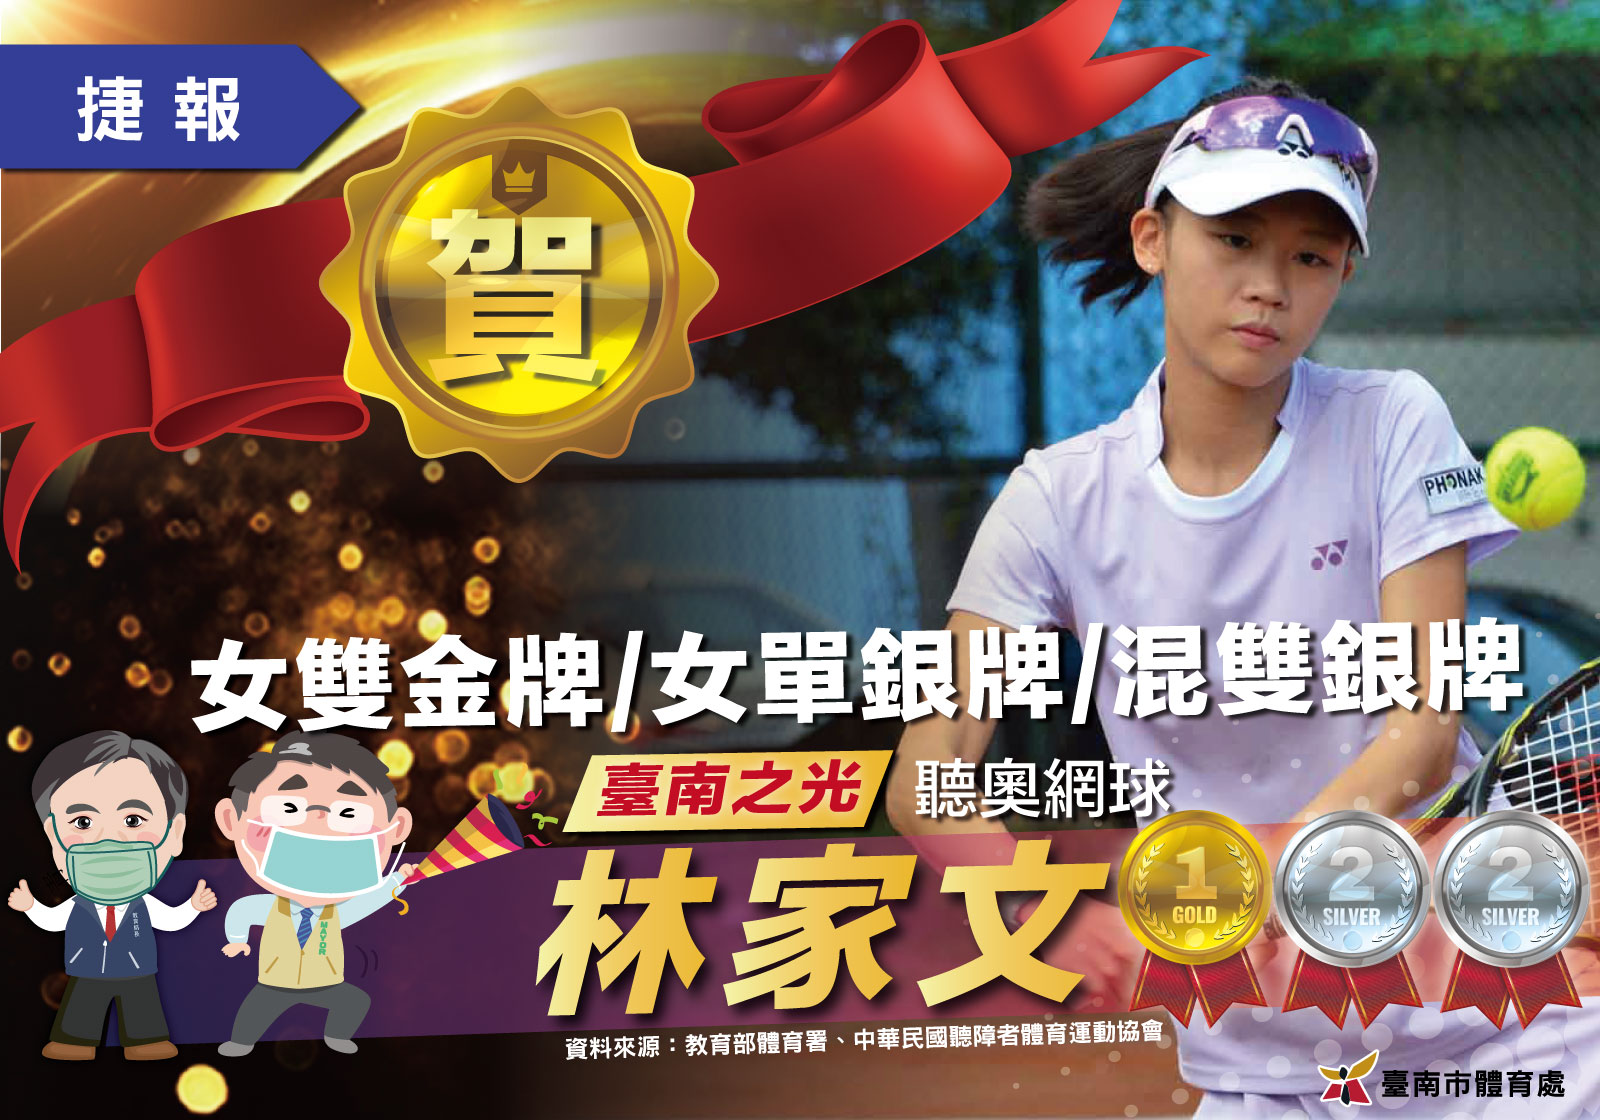 臺南選手林家文巴西聽奧網球勇奪1金2銀